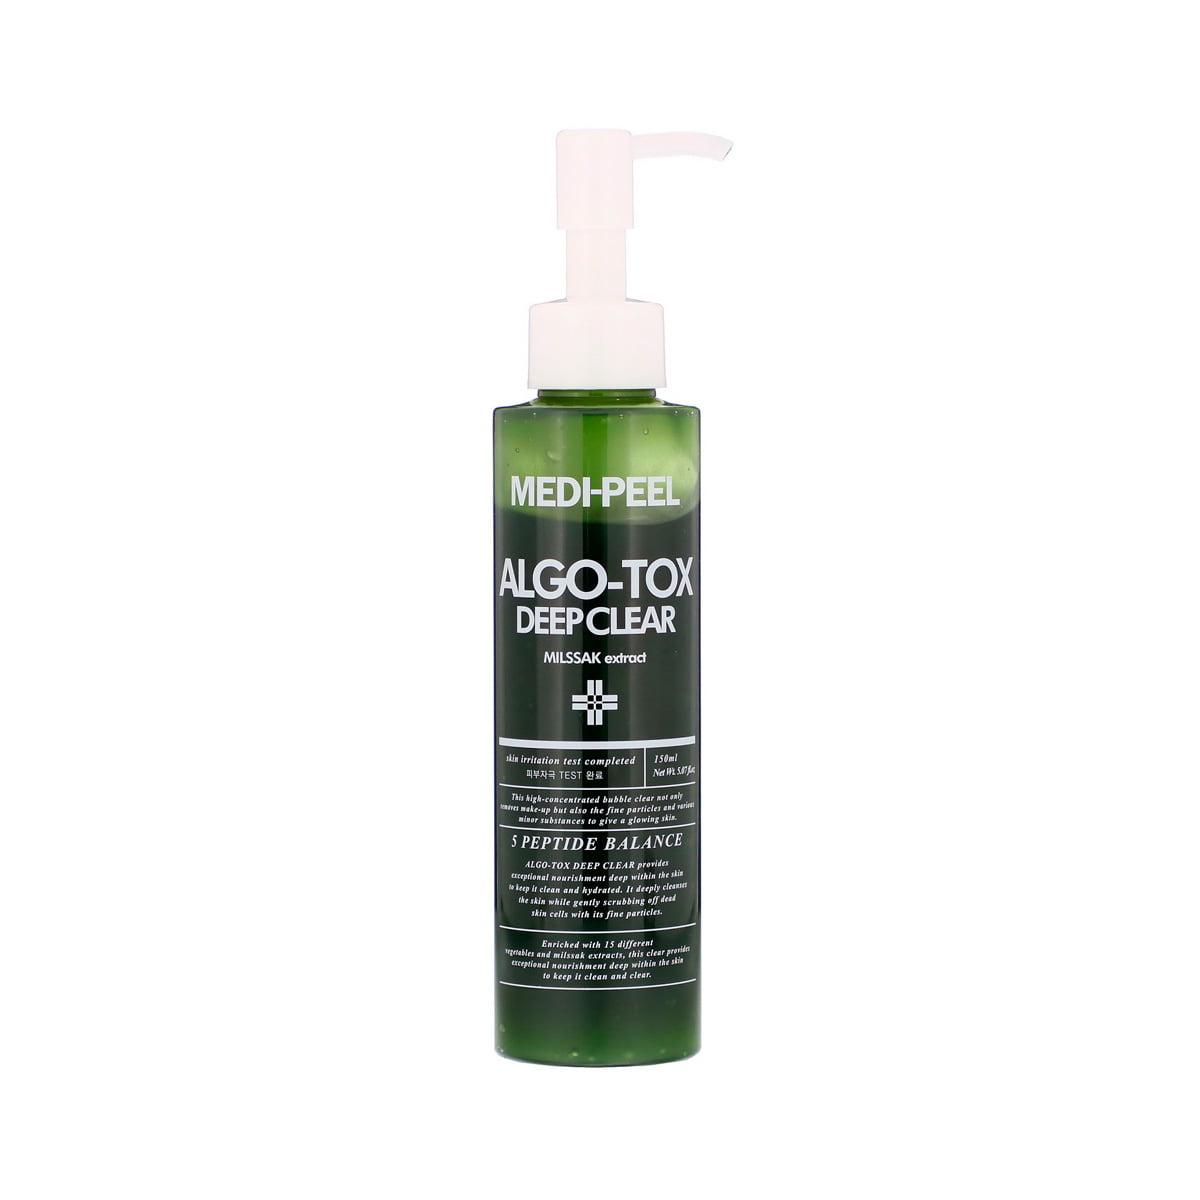 MEDI-PEEL Gel za dubinsko čišćenje kože Algo-Tox Deep Clear 150 ml